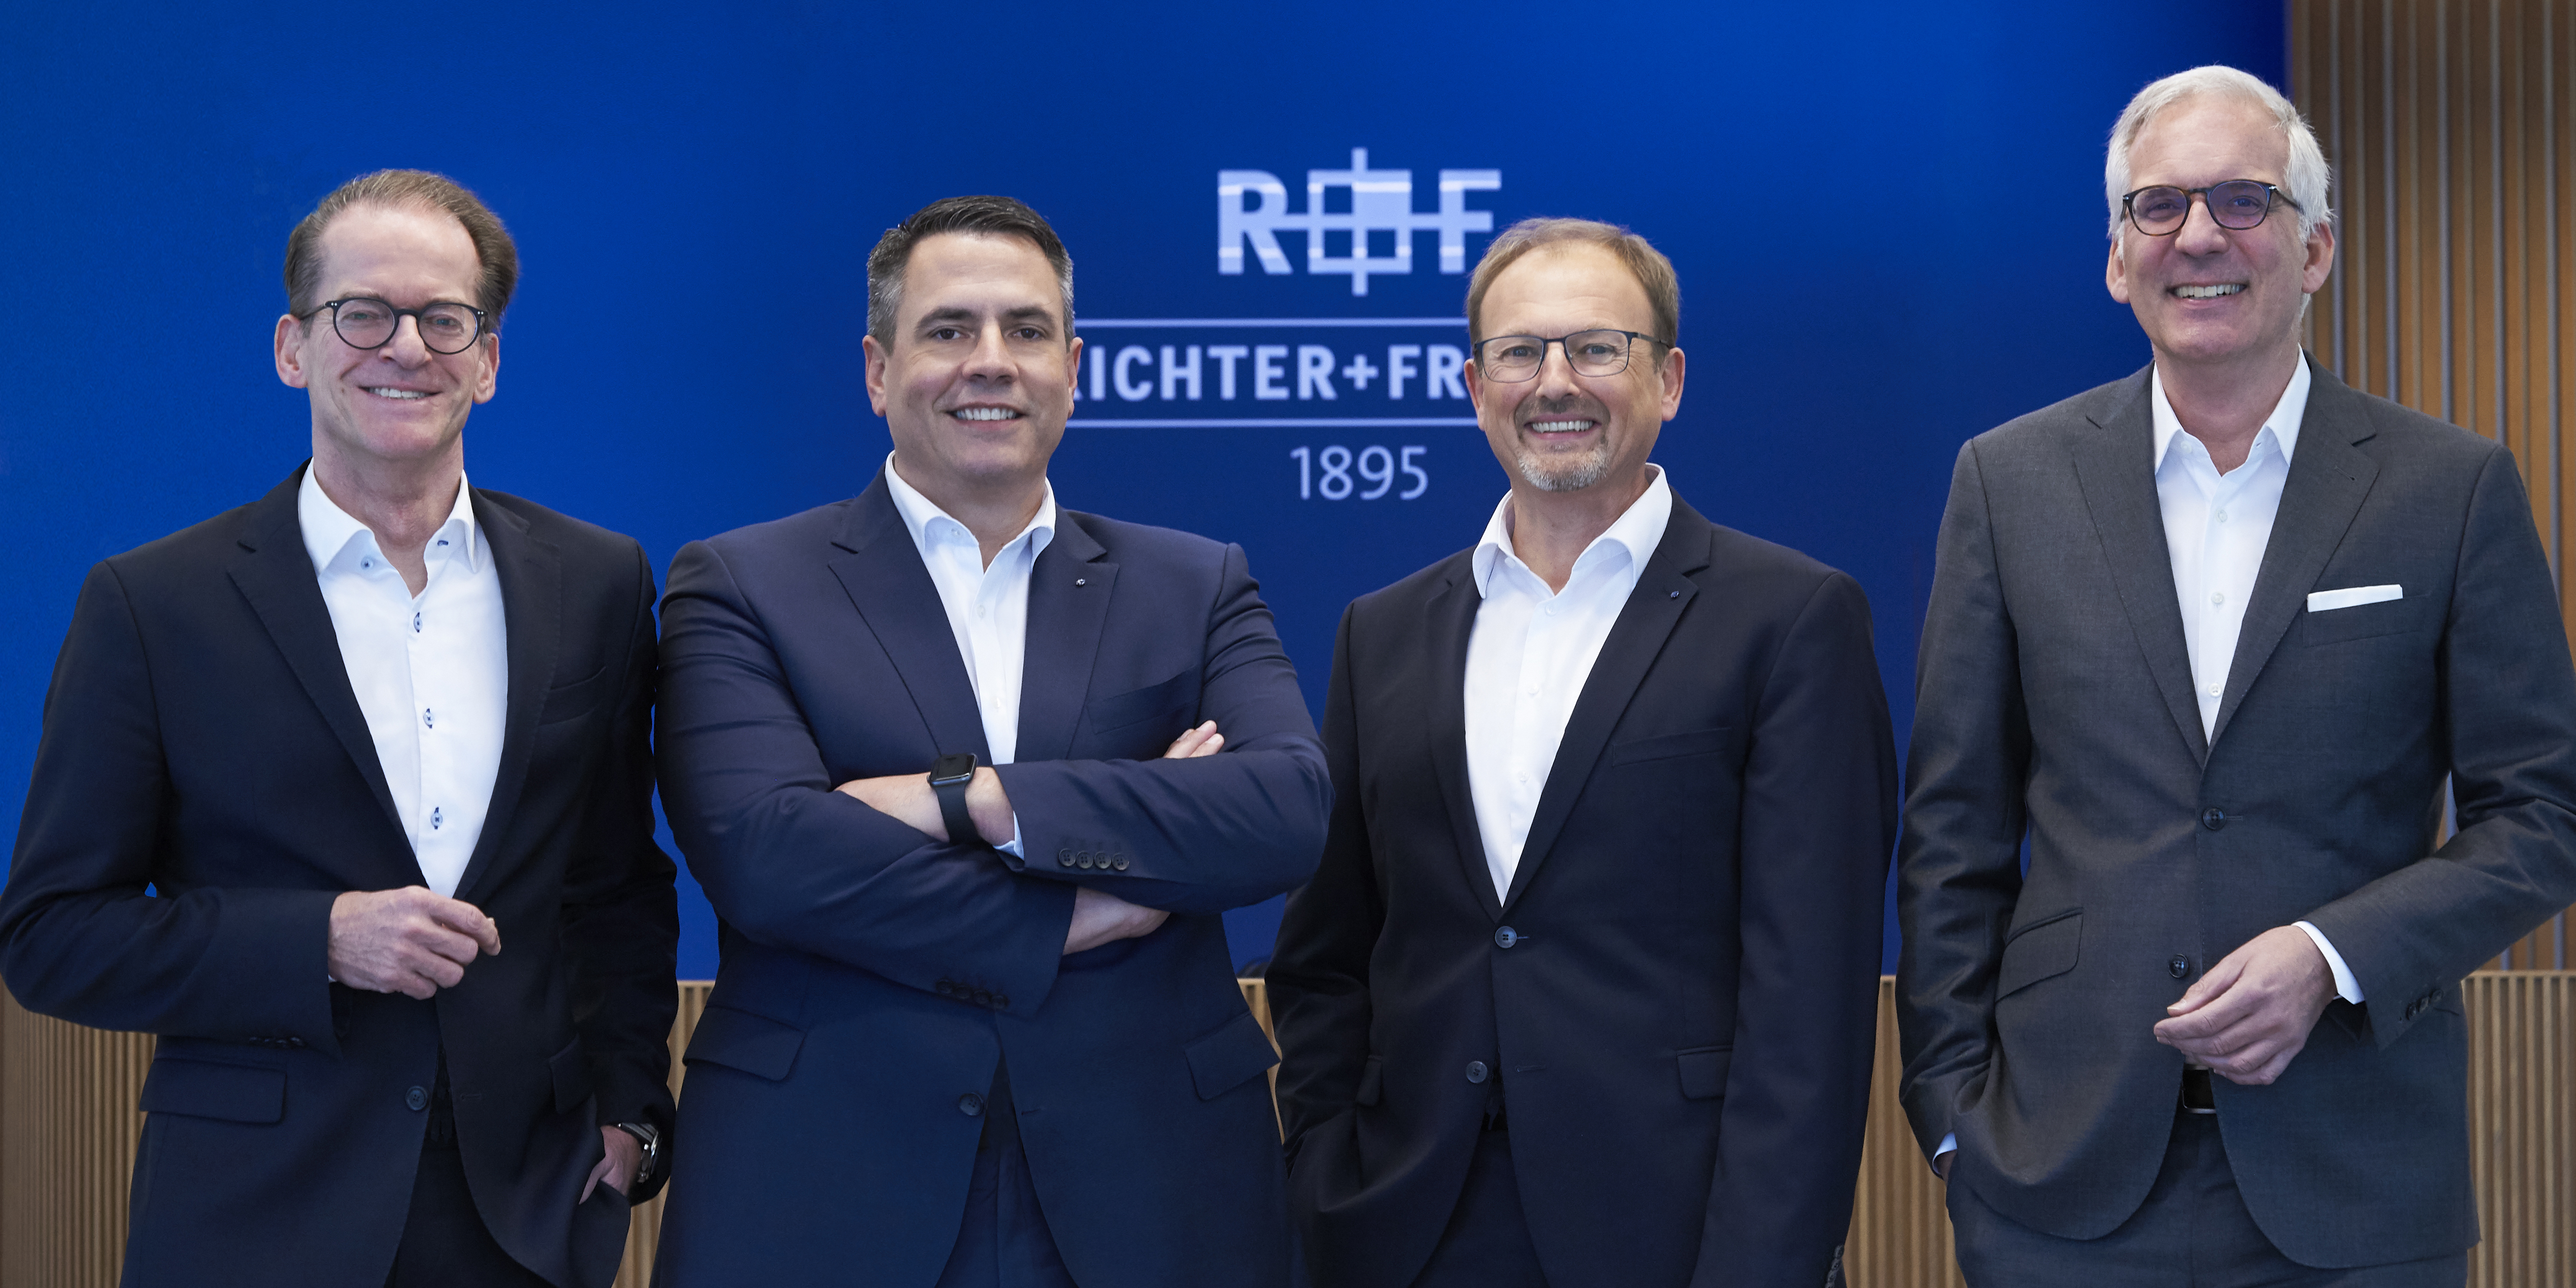 Richter+Frenzel KG Geschäftsführung: Guido Kreitz, Sven Kutzki, Robert Oberberger, Wilhelm Schuster